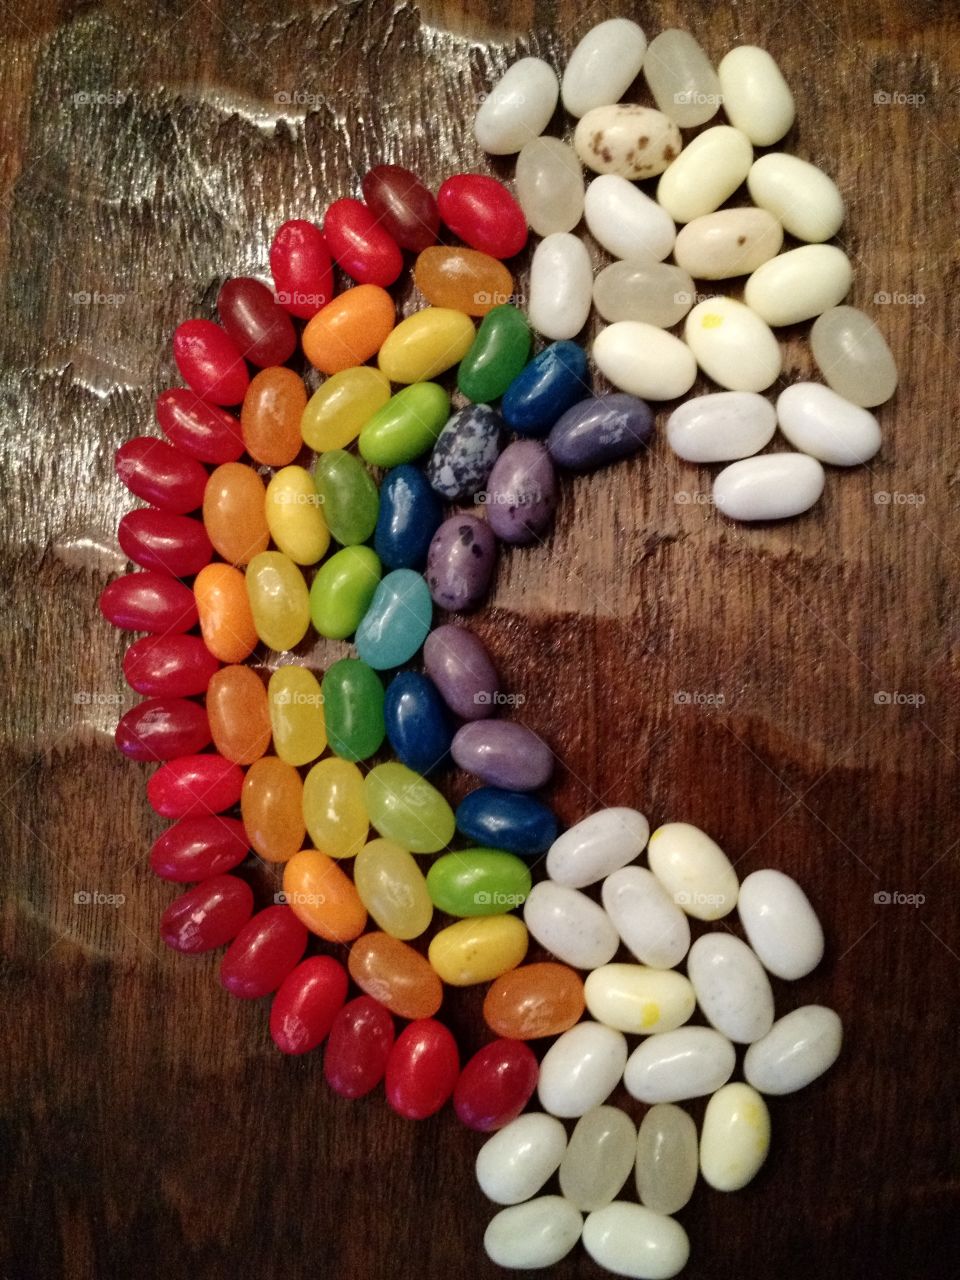 rainbow beans